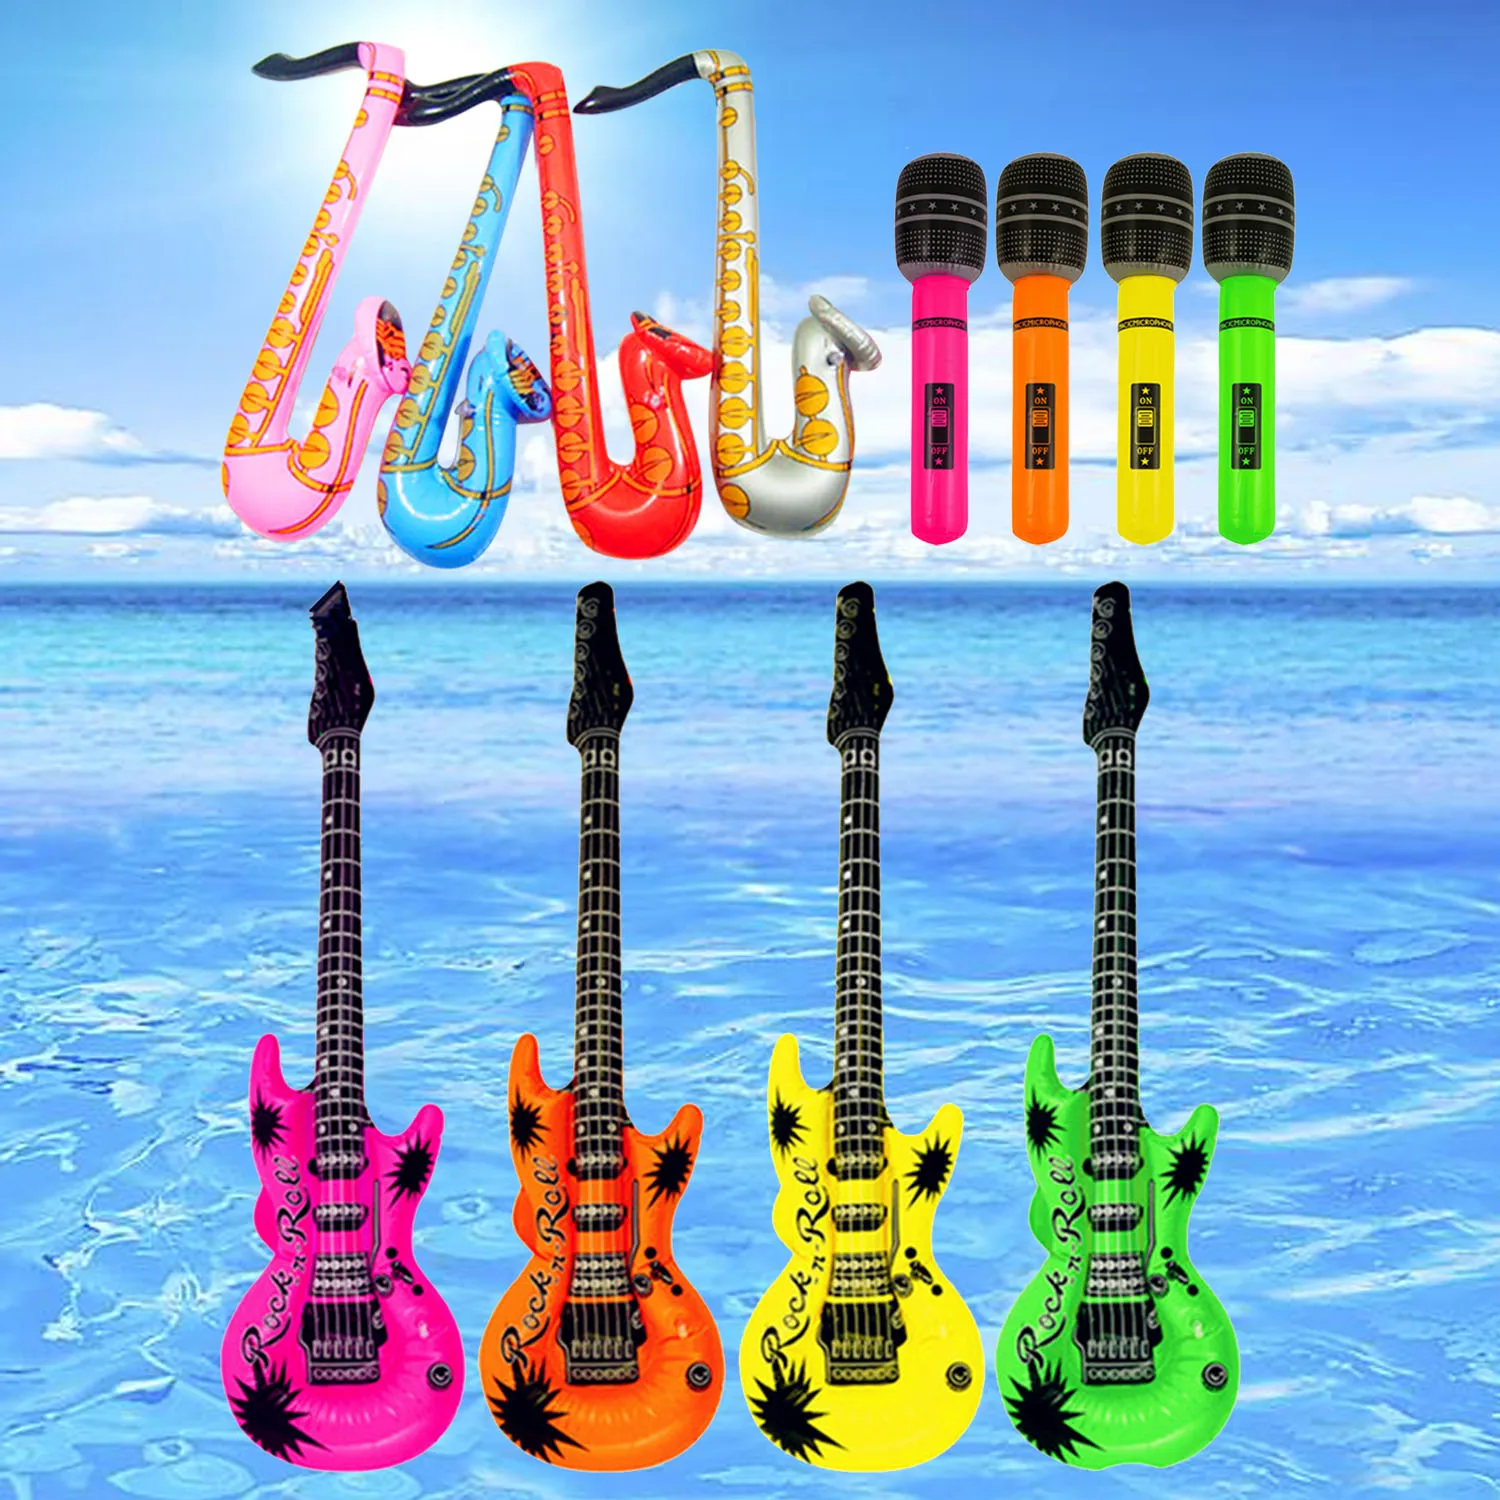 14cps надувные гитары саксофон микрофон воздушные шары музыкальные инструменты игрушки аксессуары для детей плавательный бассейн вечерние принадлежности